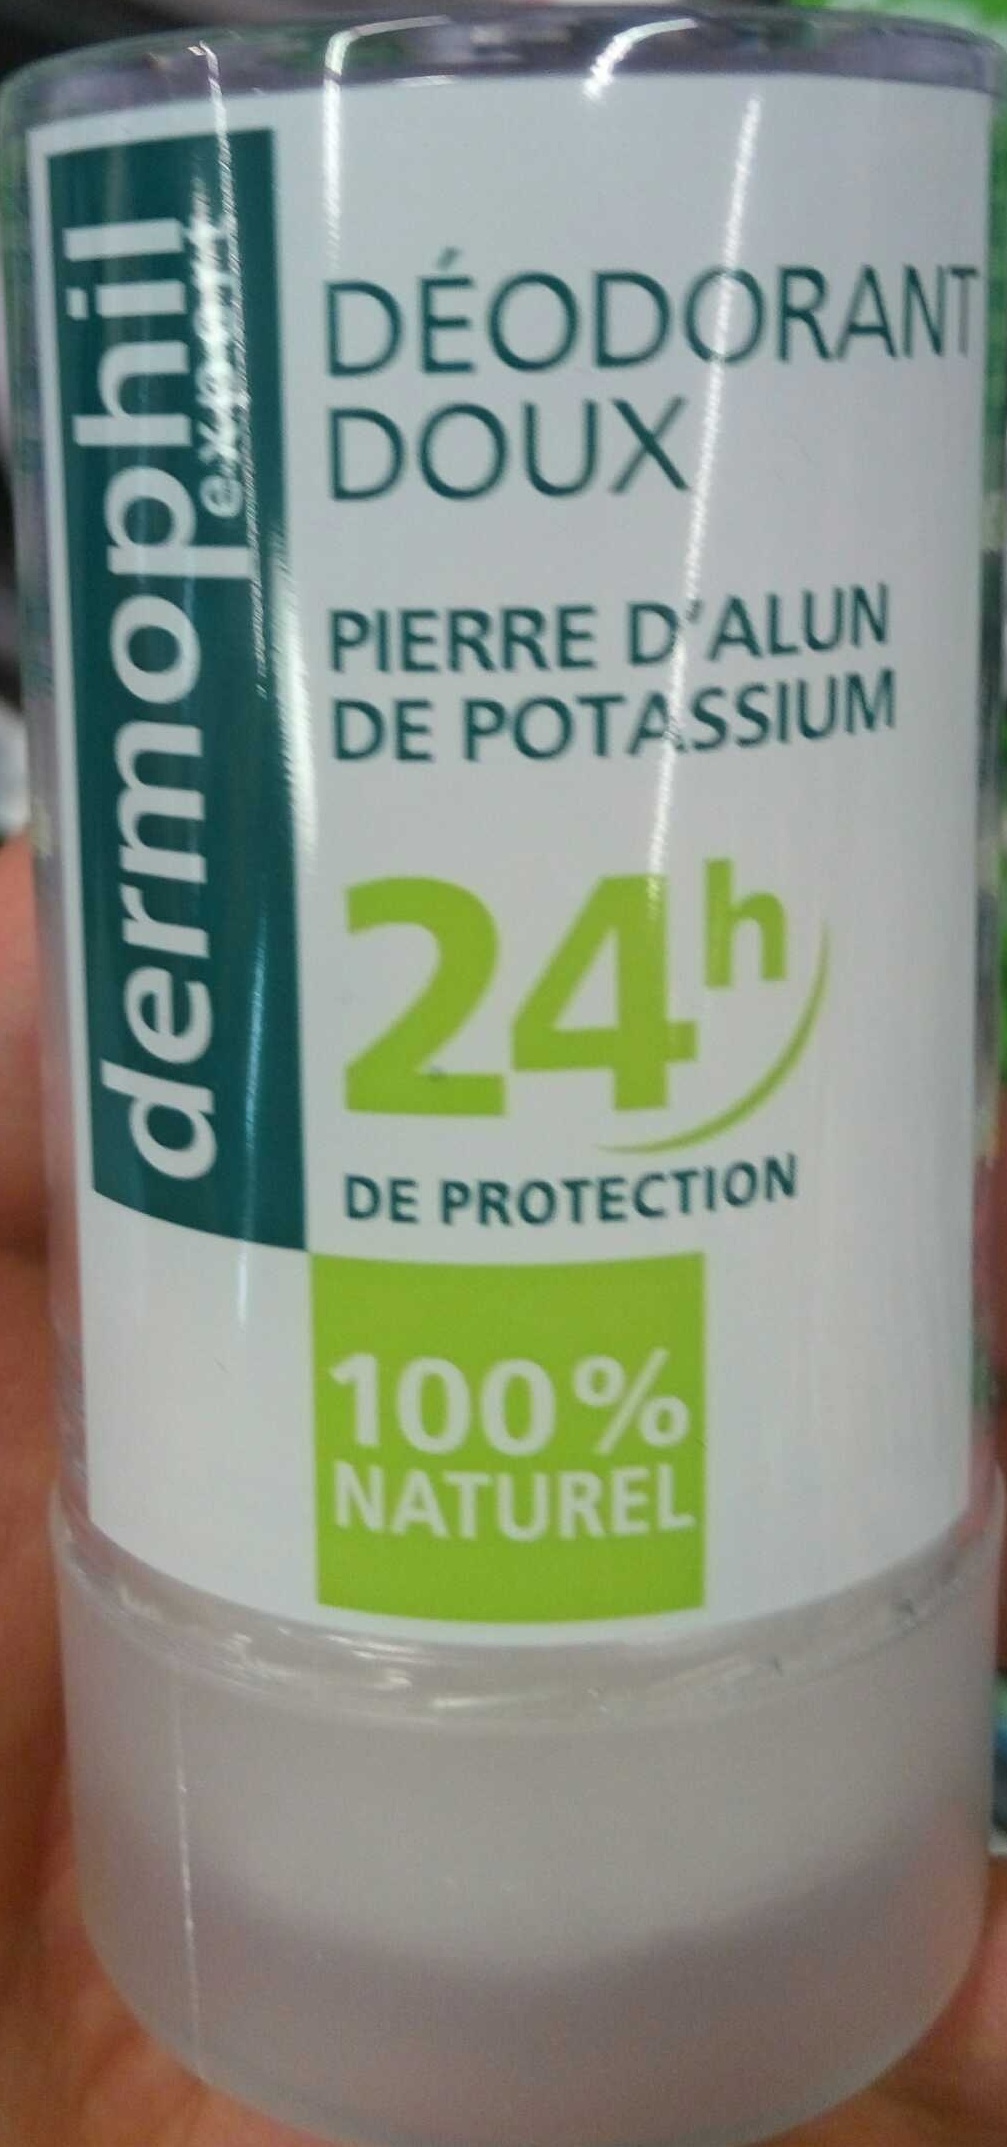 Déodorant doux Pierre d'Alun de Potassium 24H - Produit - fr